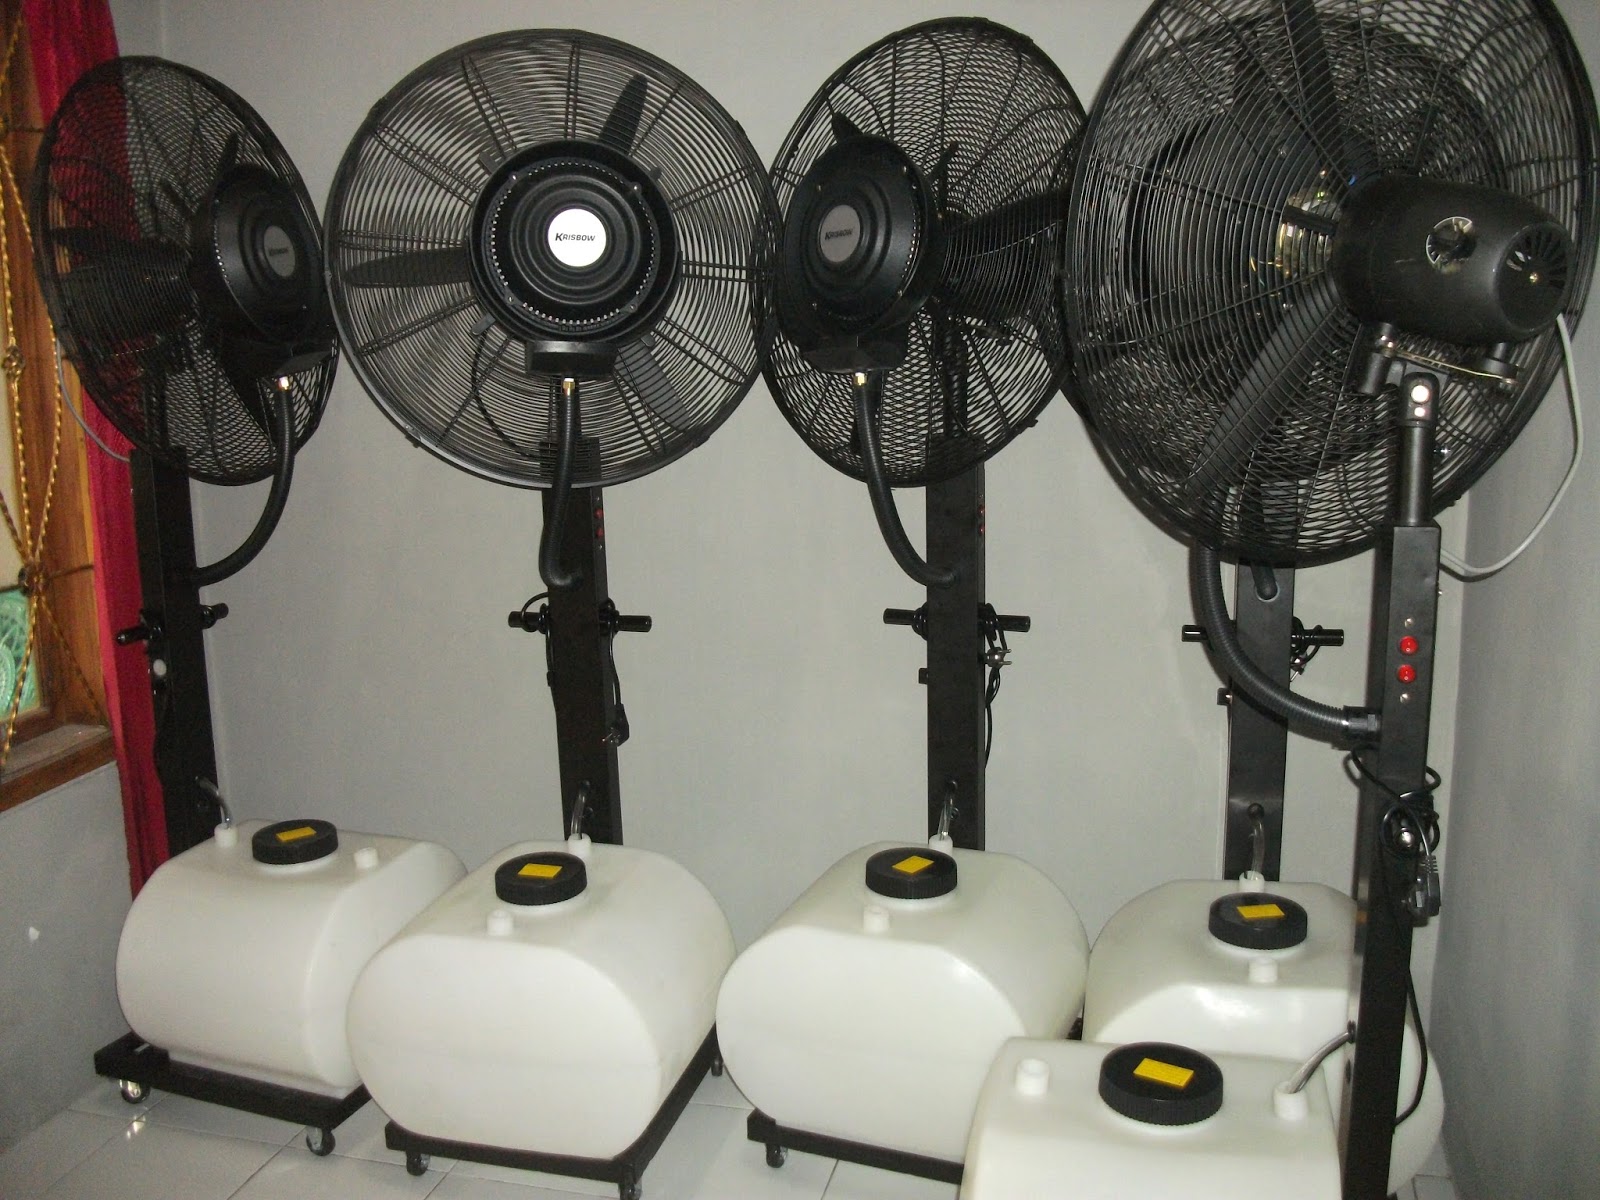 GARFARI TEKNIK Sewa Rental Air Cooling Fan Pekanbaru